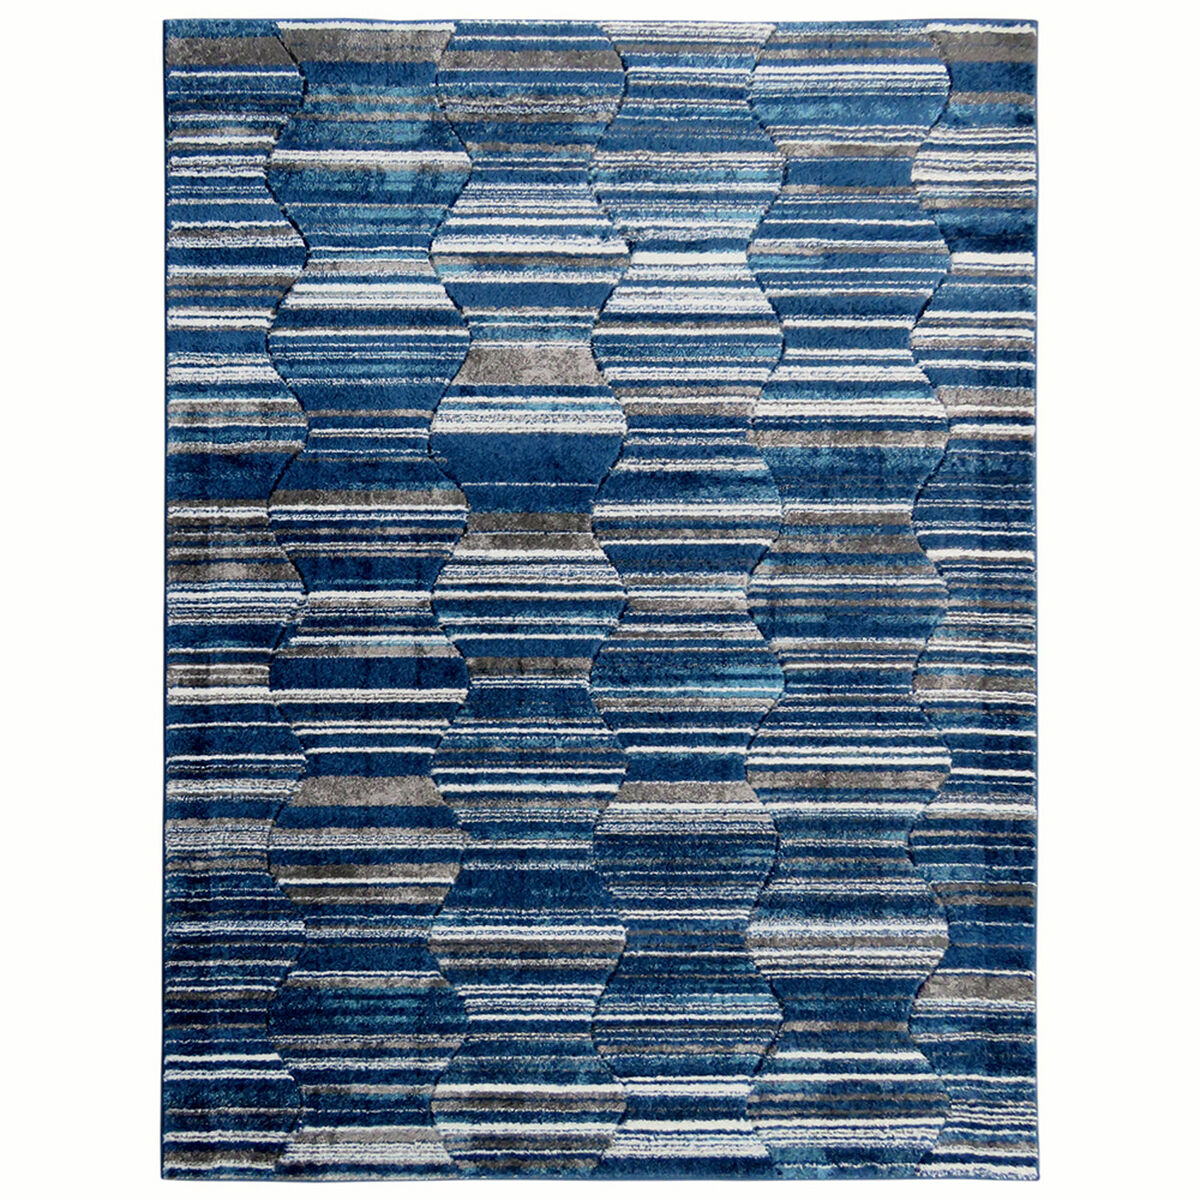 Bajada de Cama Idetex Carved Azul 80 x 120 cm